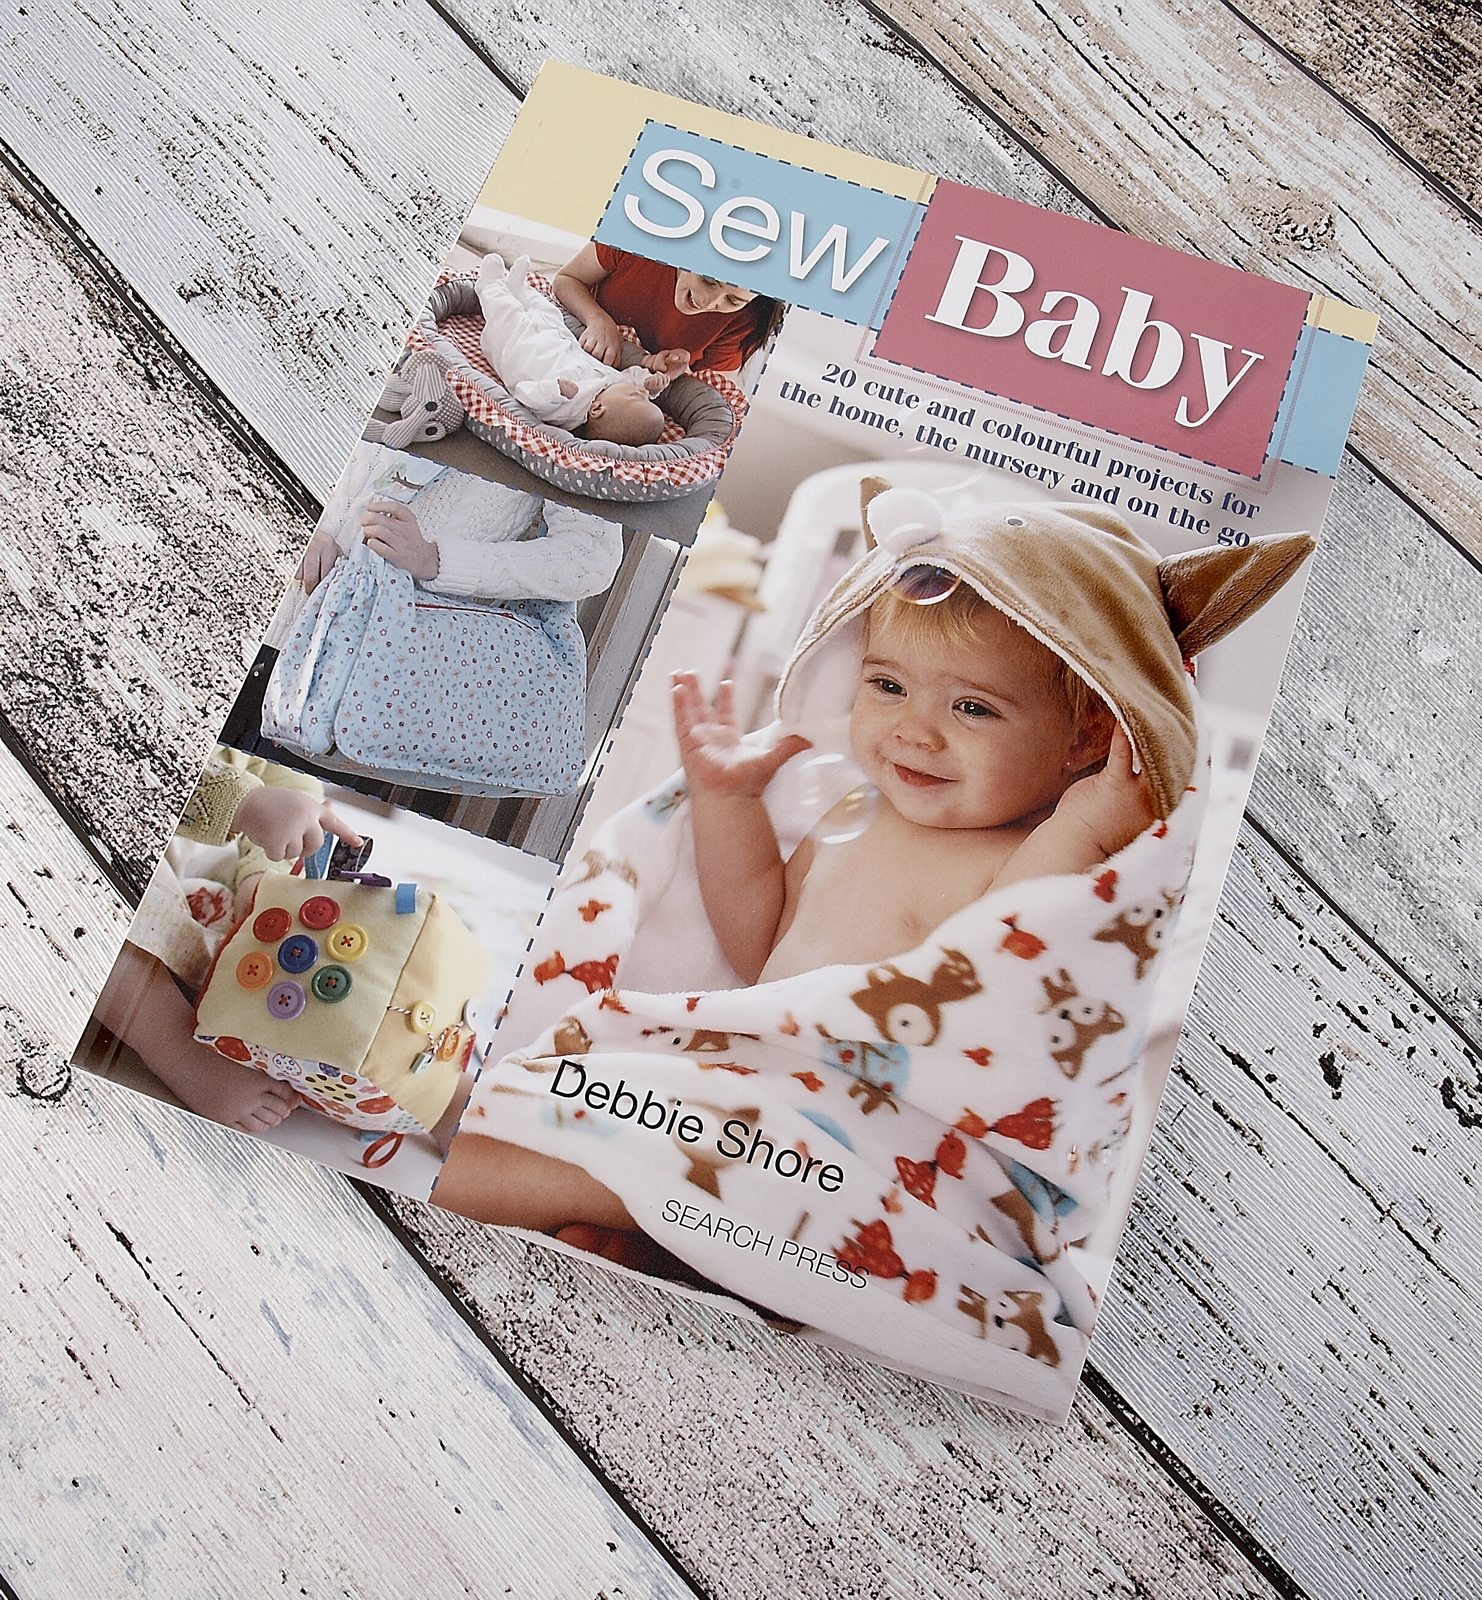 Debbie Shore Sew Baby Book